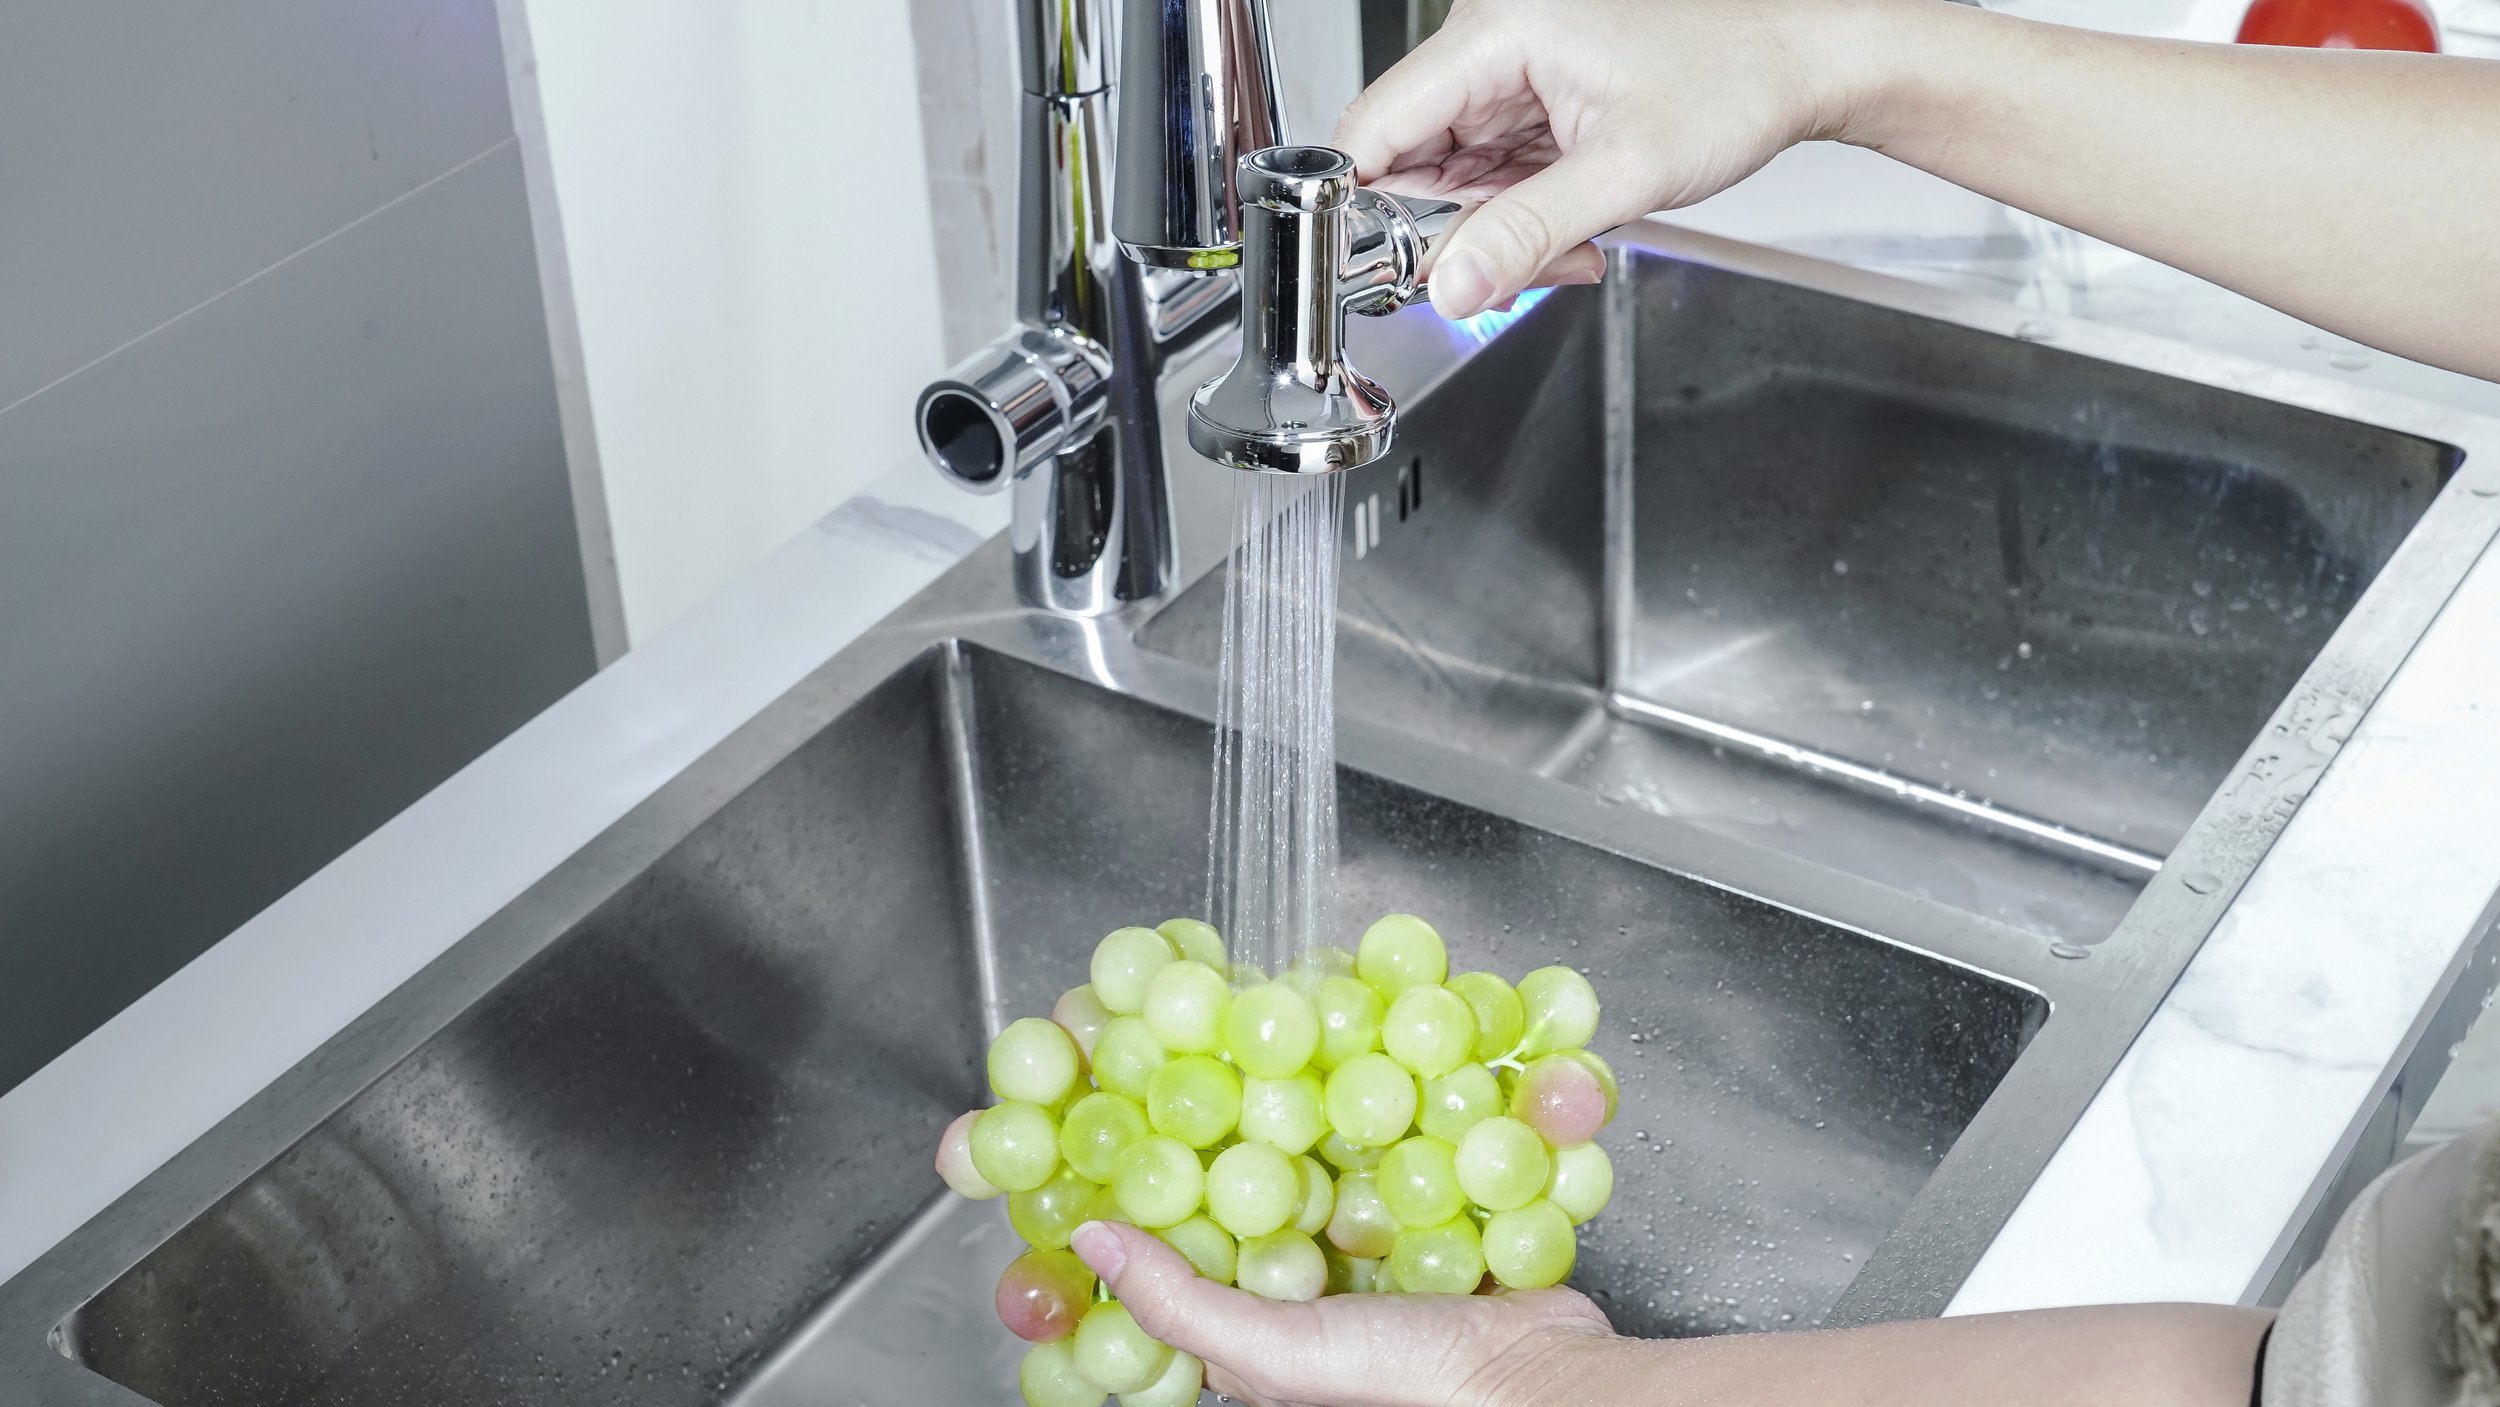 Rinsing grape.jpg